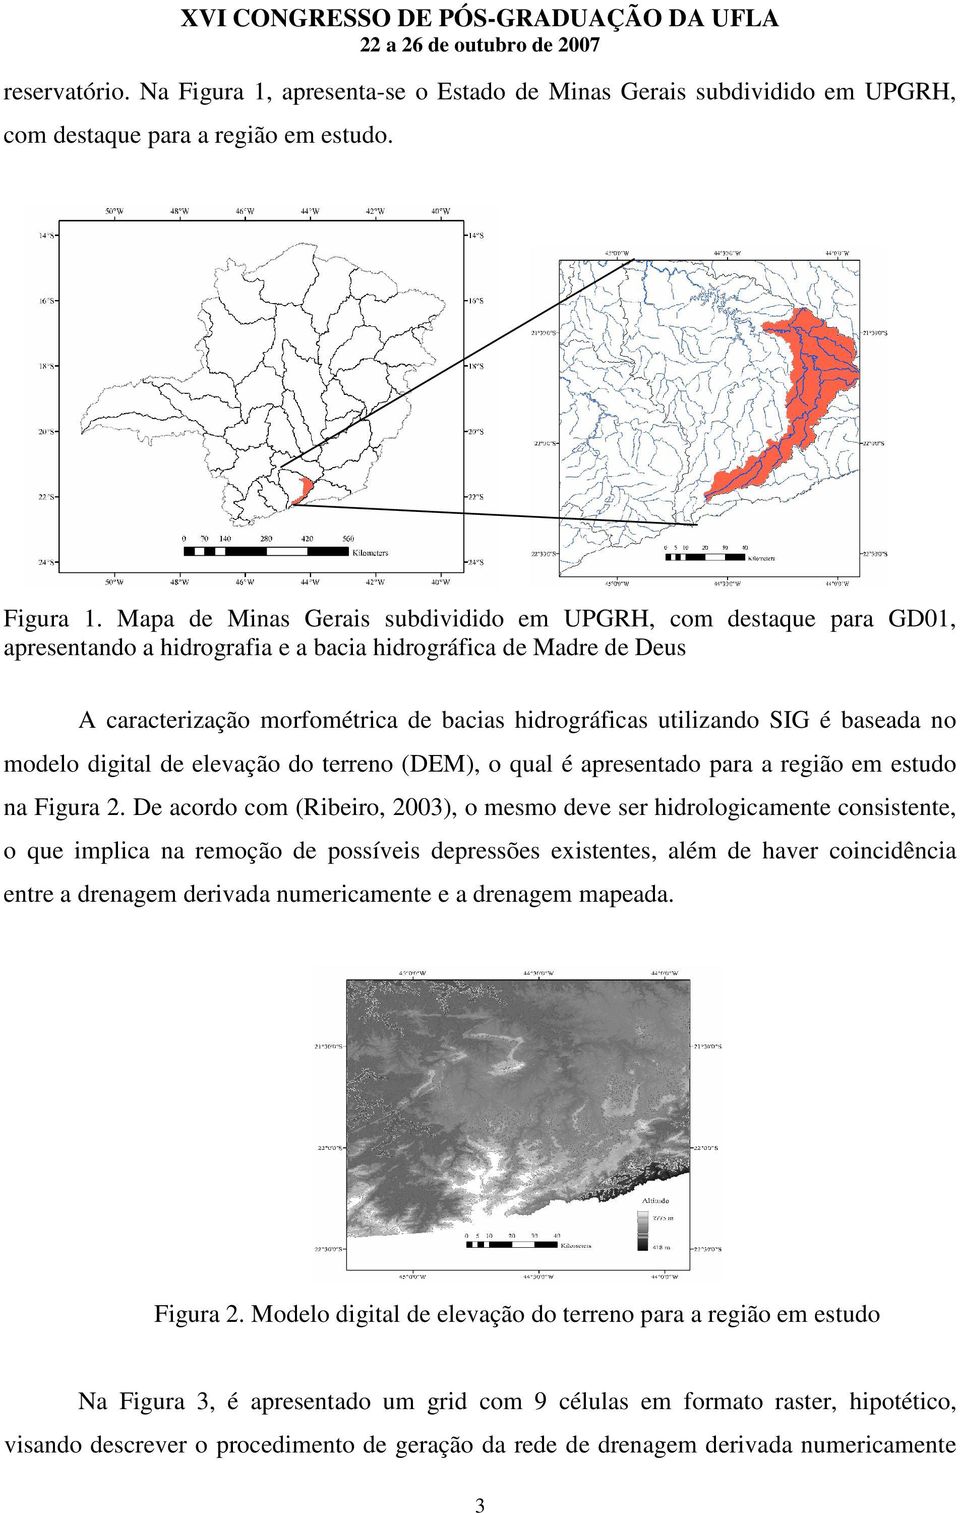 Mapa de Minas Gerais subdividido em UPGRH, com destaque para GD01, apresentando a hidrografia e a bacia hidrográfica de Madre de Deus A caracterização morfométrica de bacias hidrográficas utilizando